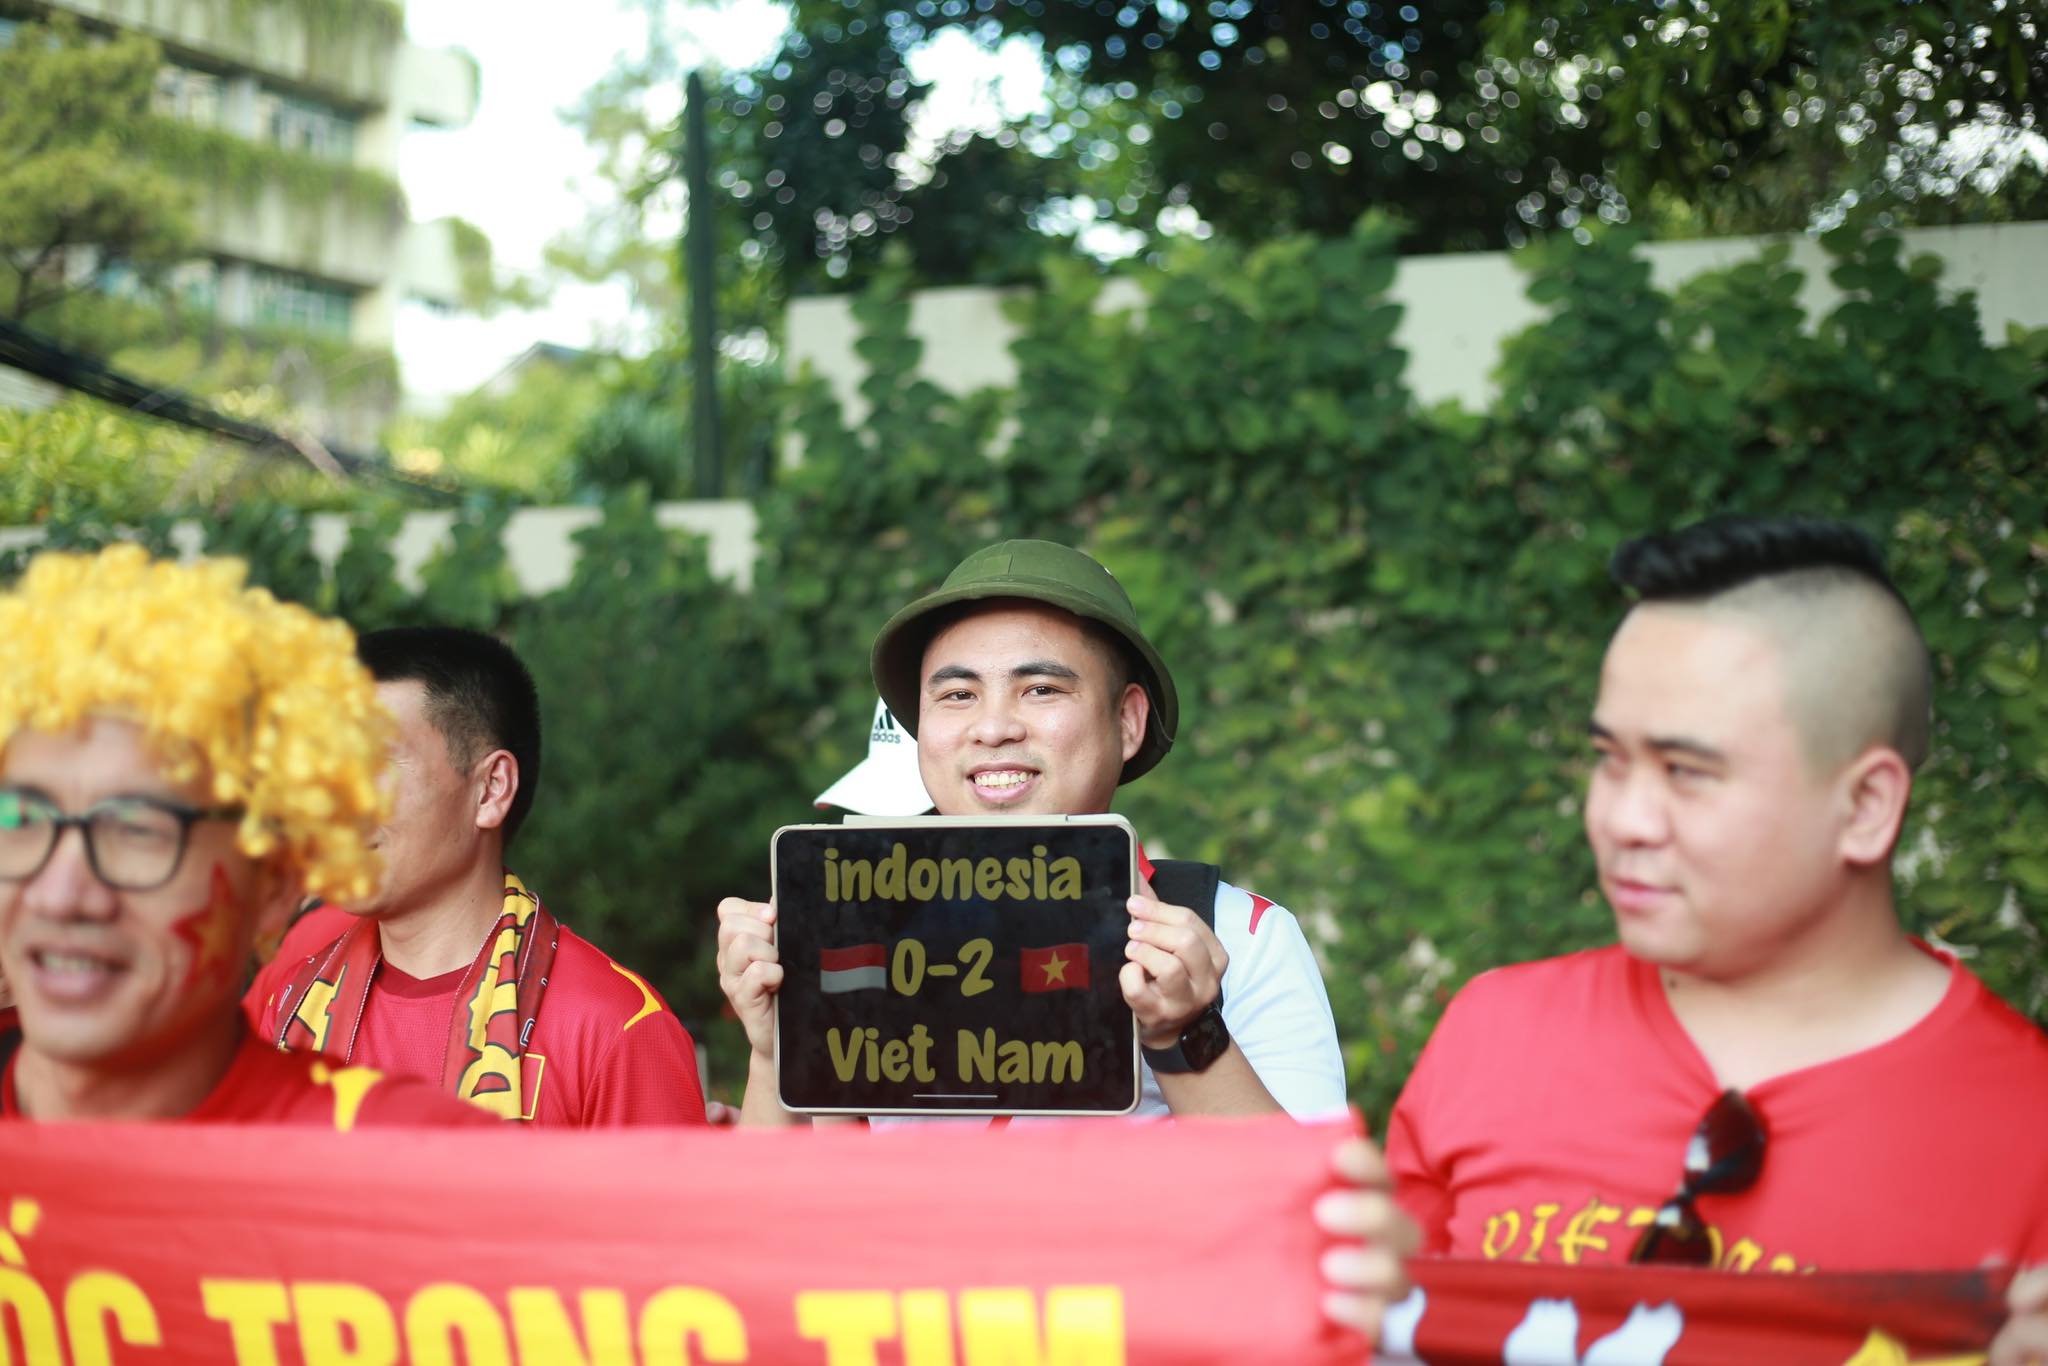 CĐV dùng son vẽ Quốc kỳ, dự đoán Việt Nam thắng 2-0, Indonesia dùng súng kiểm soát an ninh- Ảnh 6.